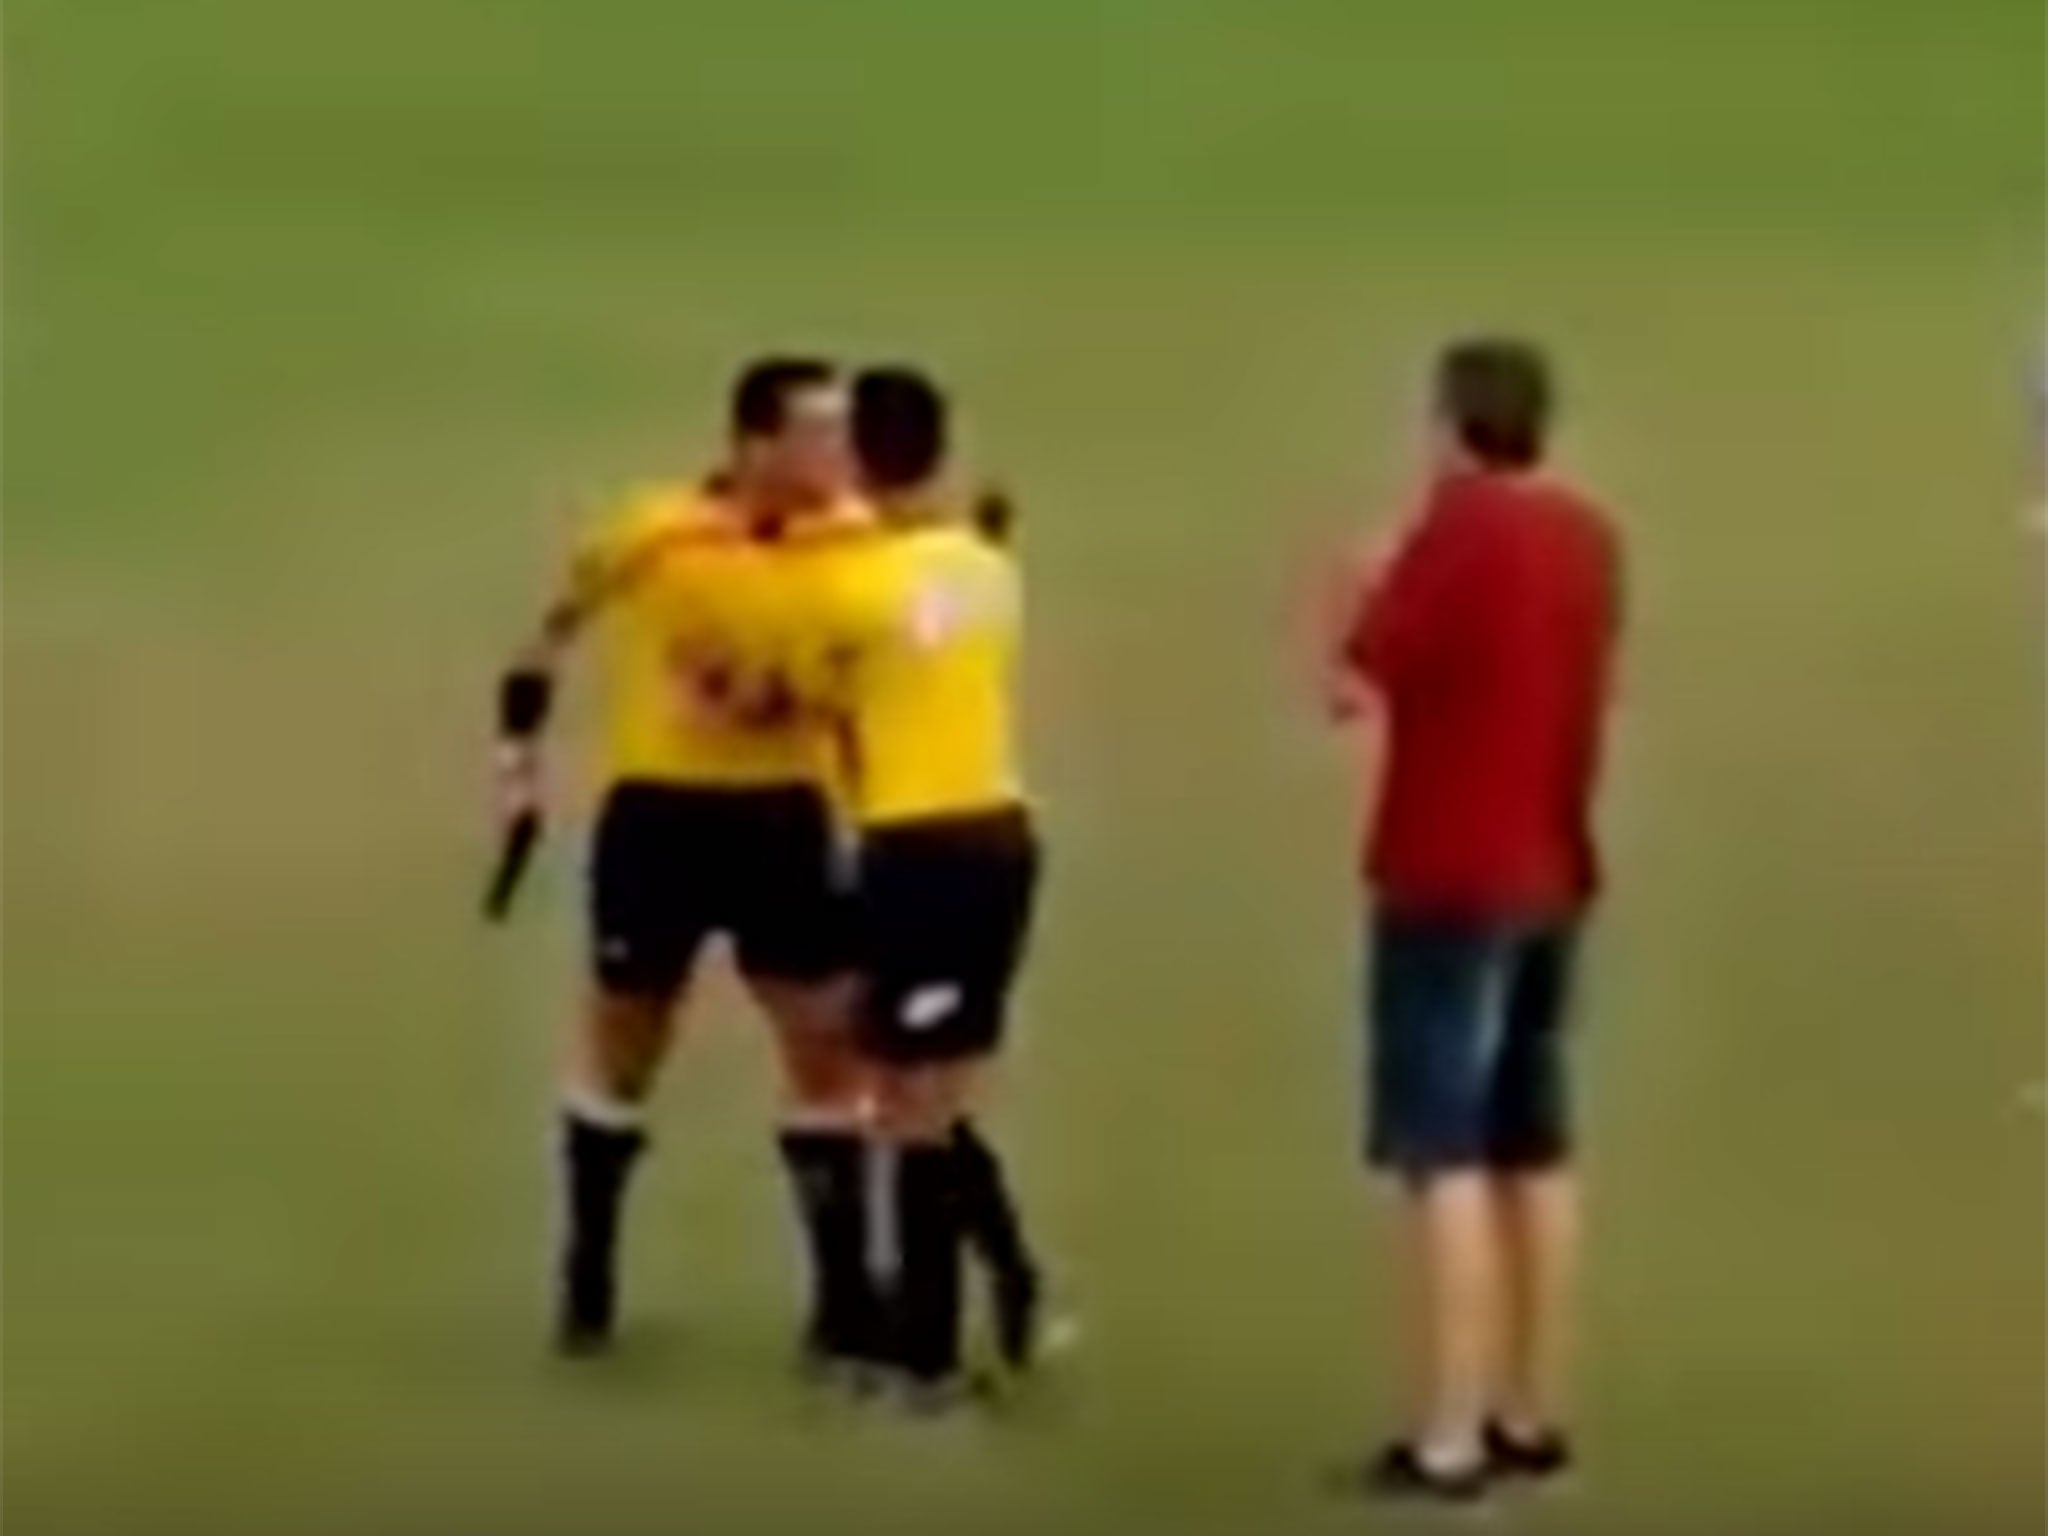 Referee Gabriel Murta pulls a gun during a match